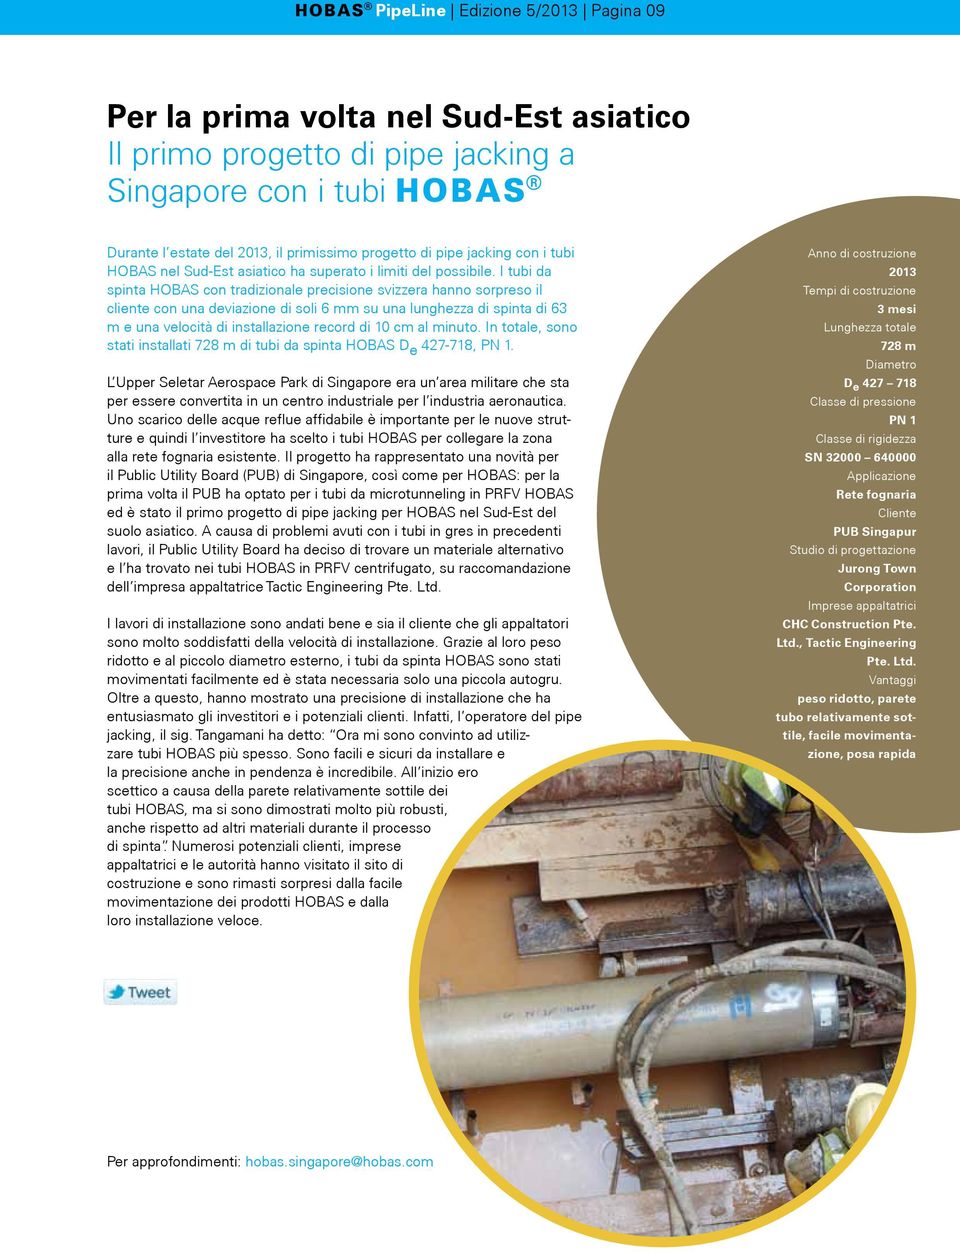 I tubi da spinta HOBAS con tradizionale precisione svizzera hanno sorpreso il cliente con una deviazione di soli 6 mm su una lunghezza di spinta di 63 m e una velocità di installazione record di 10